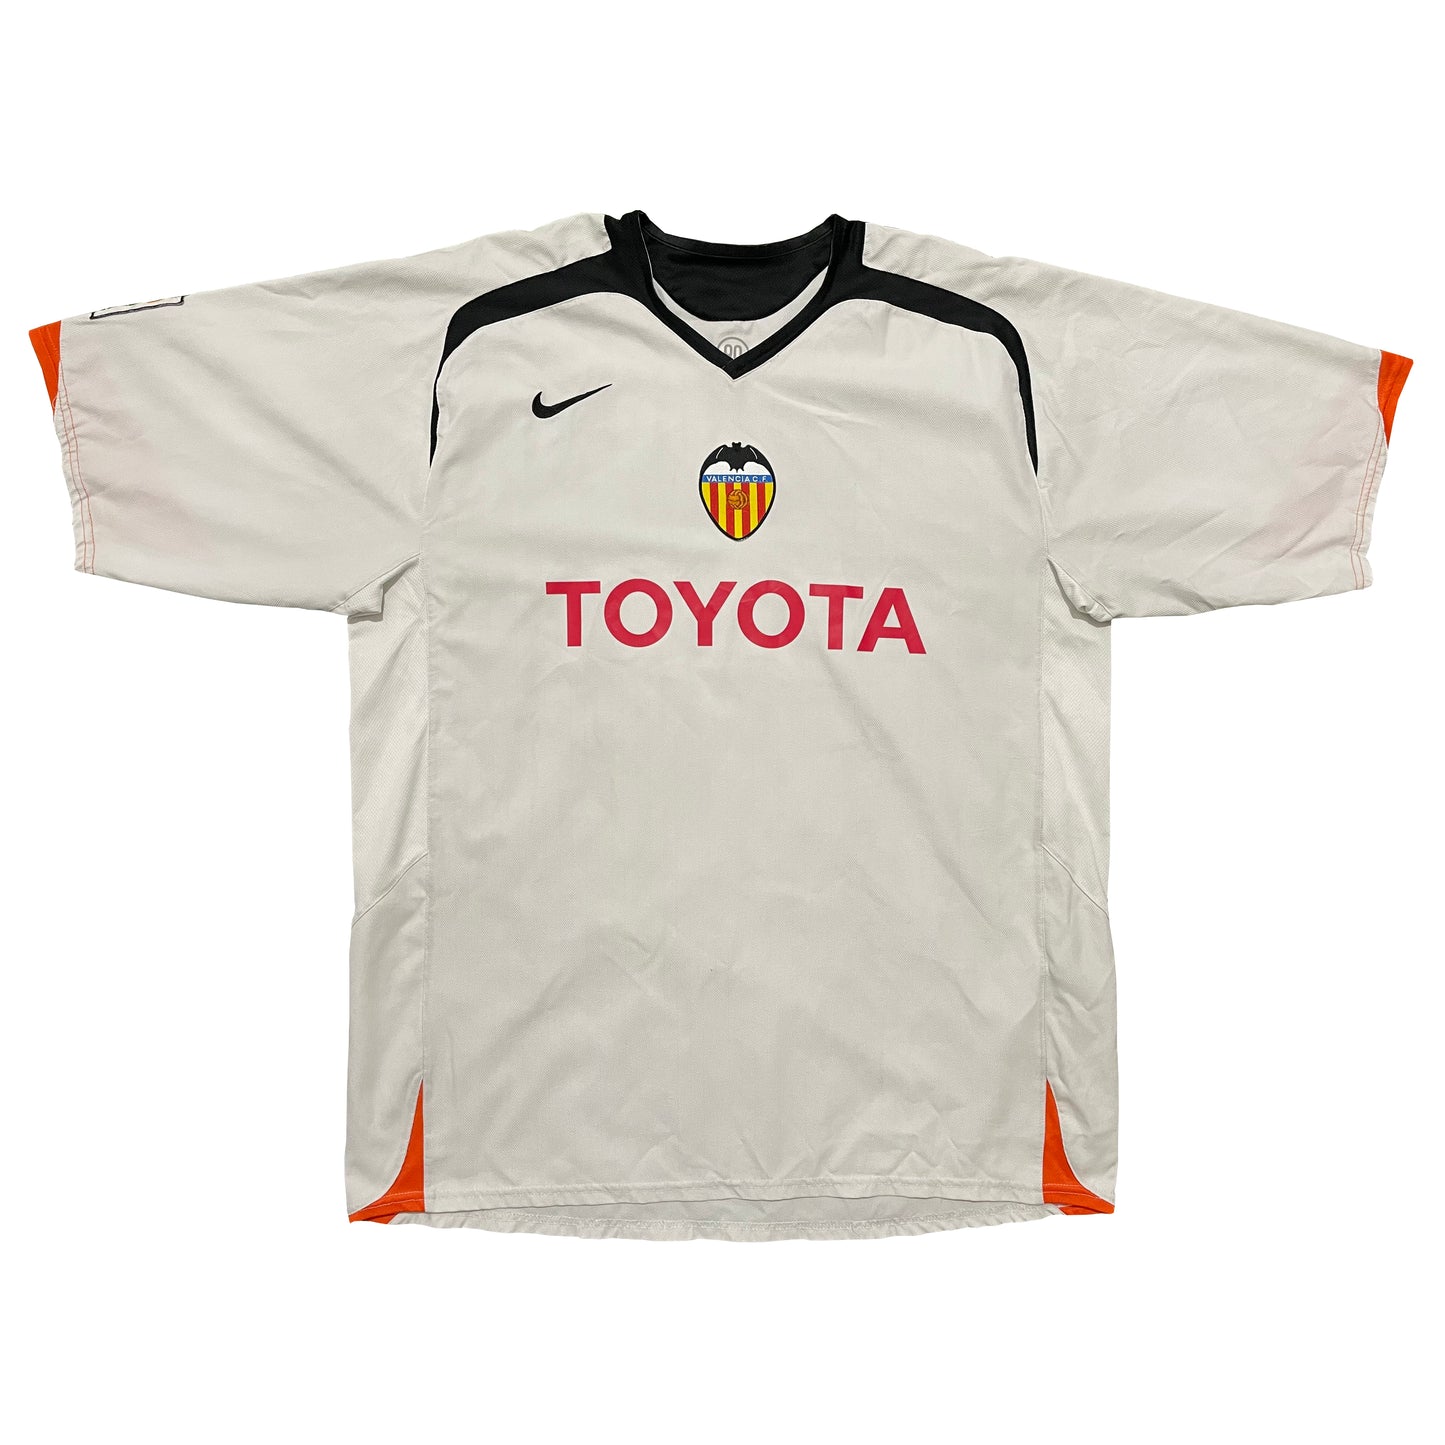 2005-2006 Valencia CF home shirt #21 Aimar (XL)